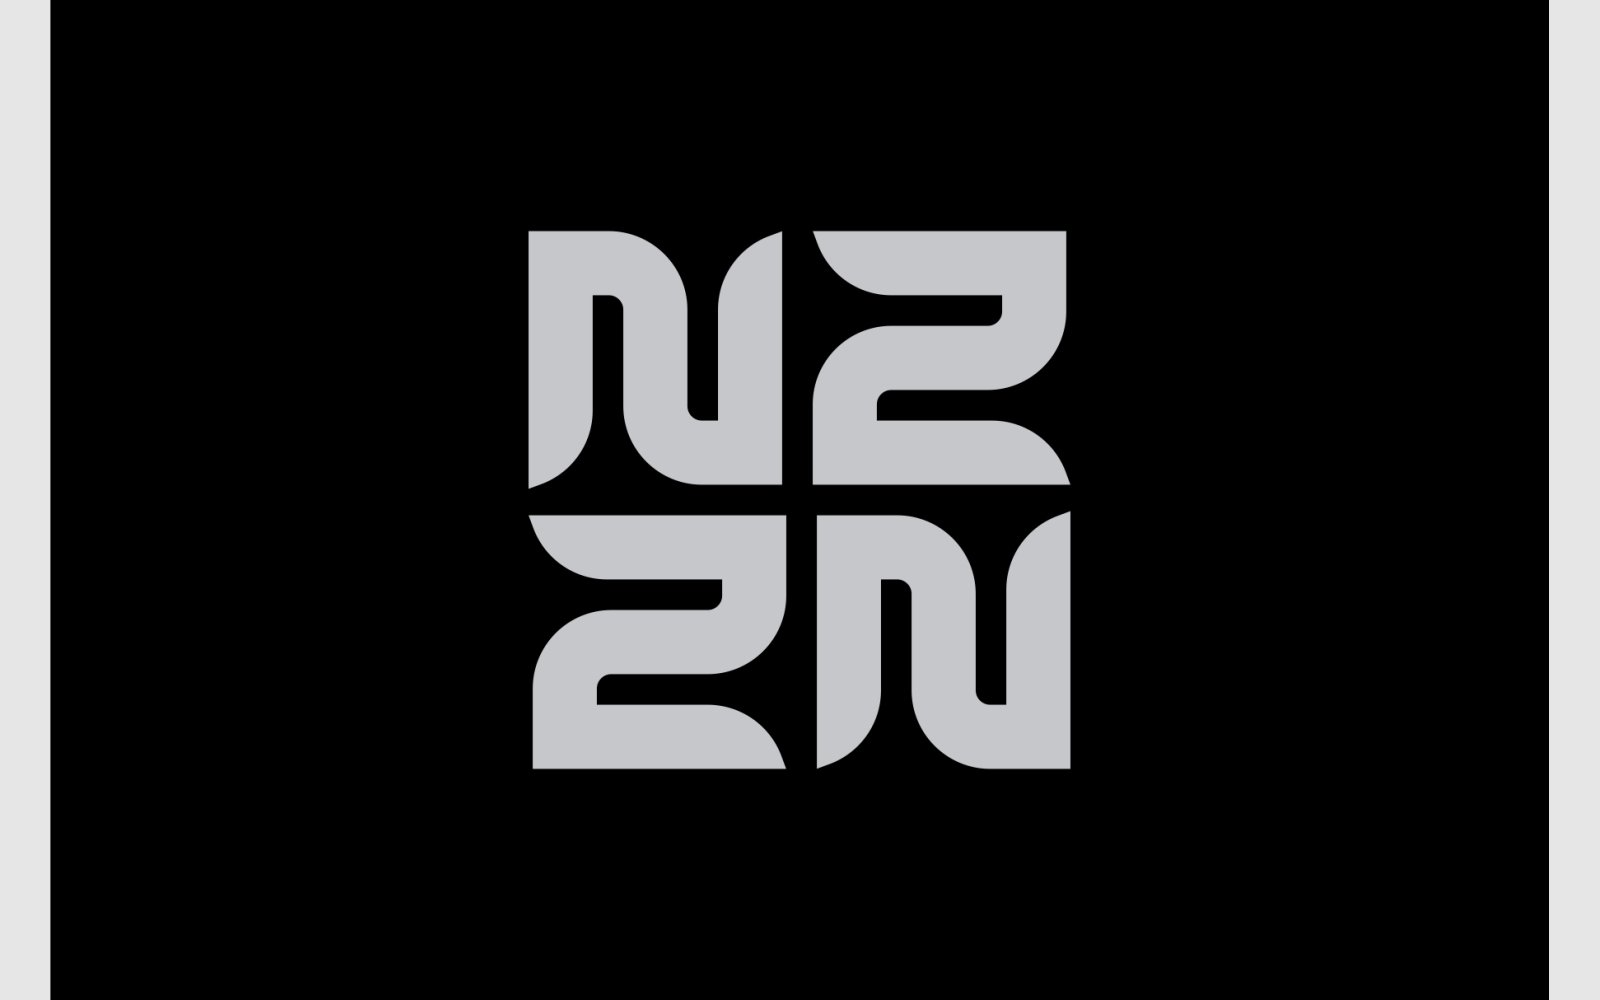 Letter N Z Ambigram Monogram Logo